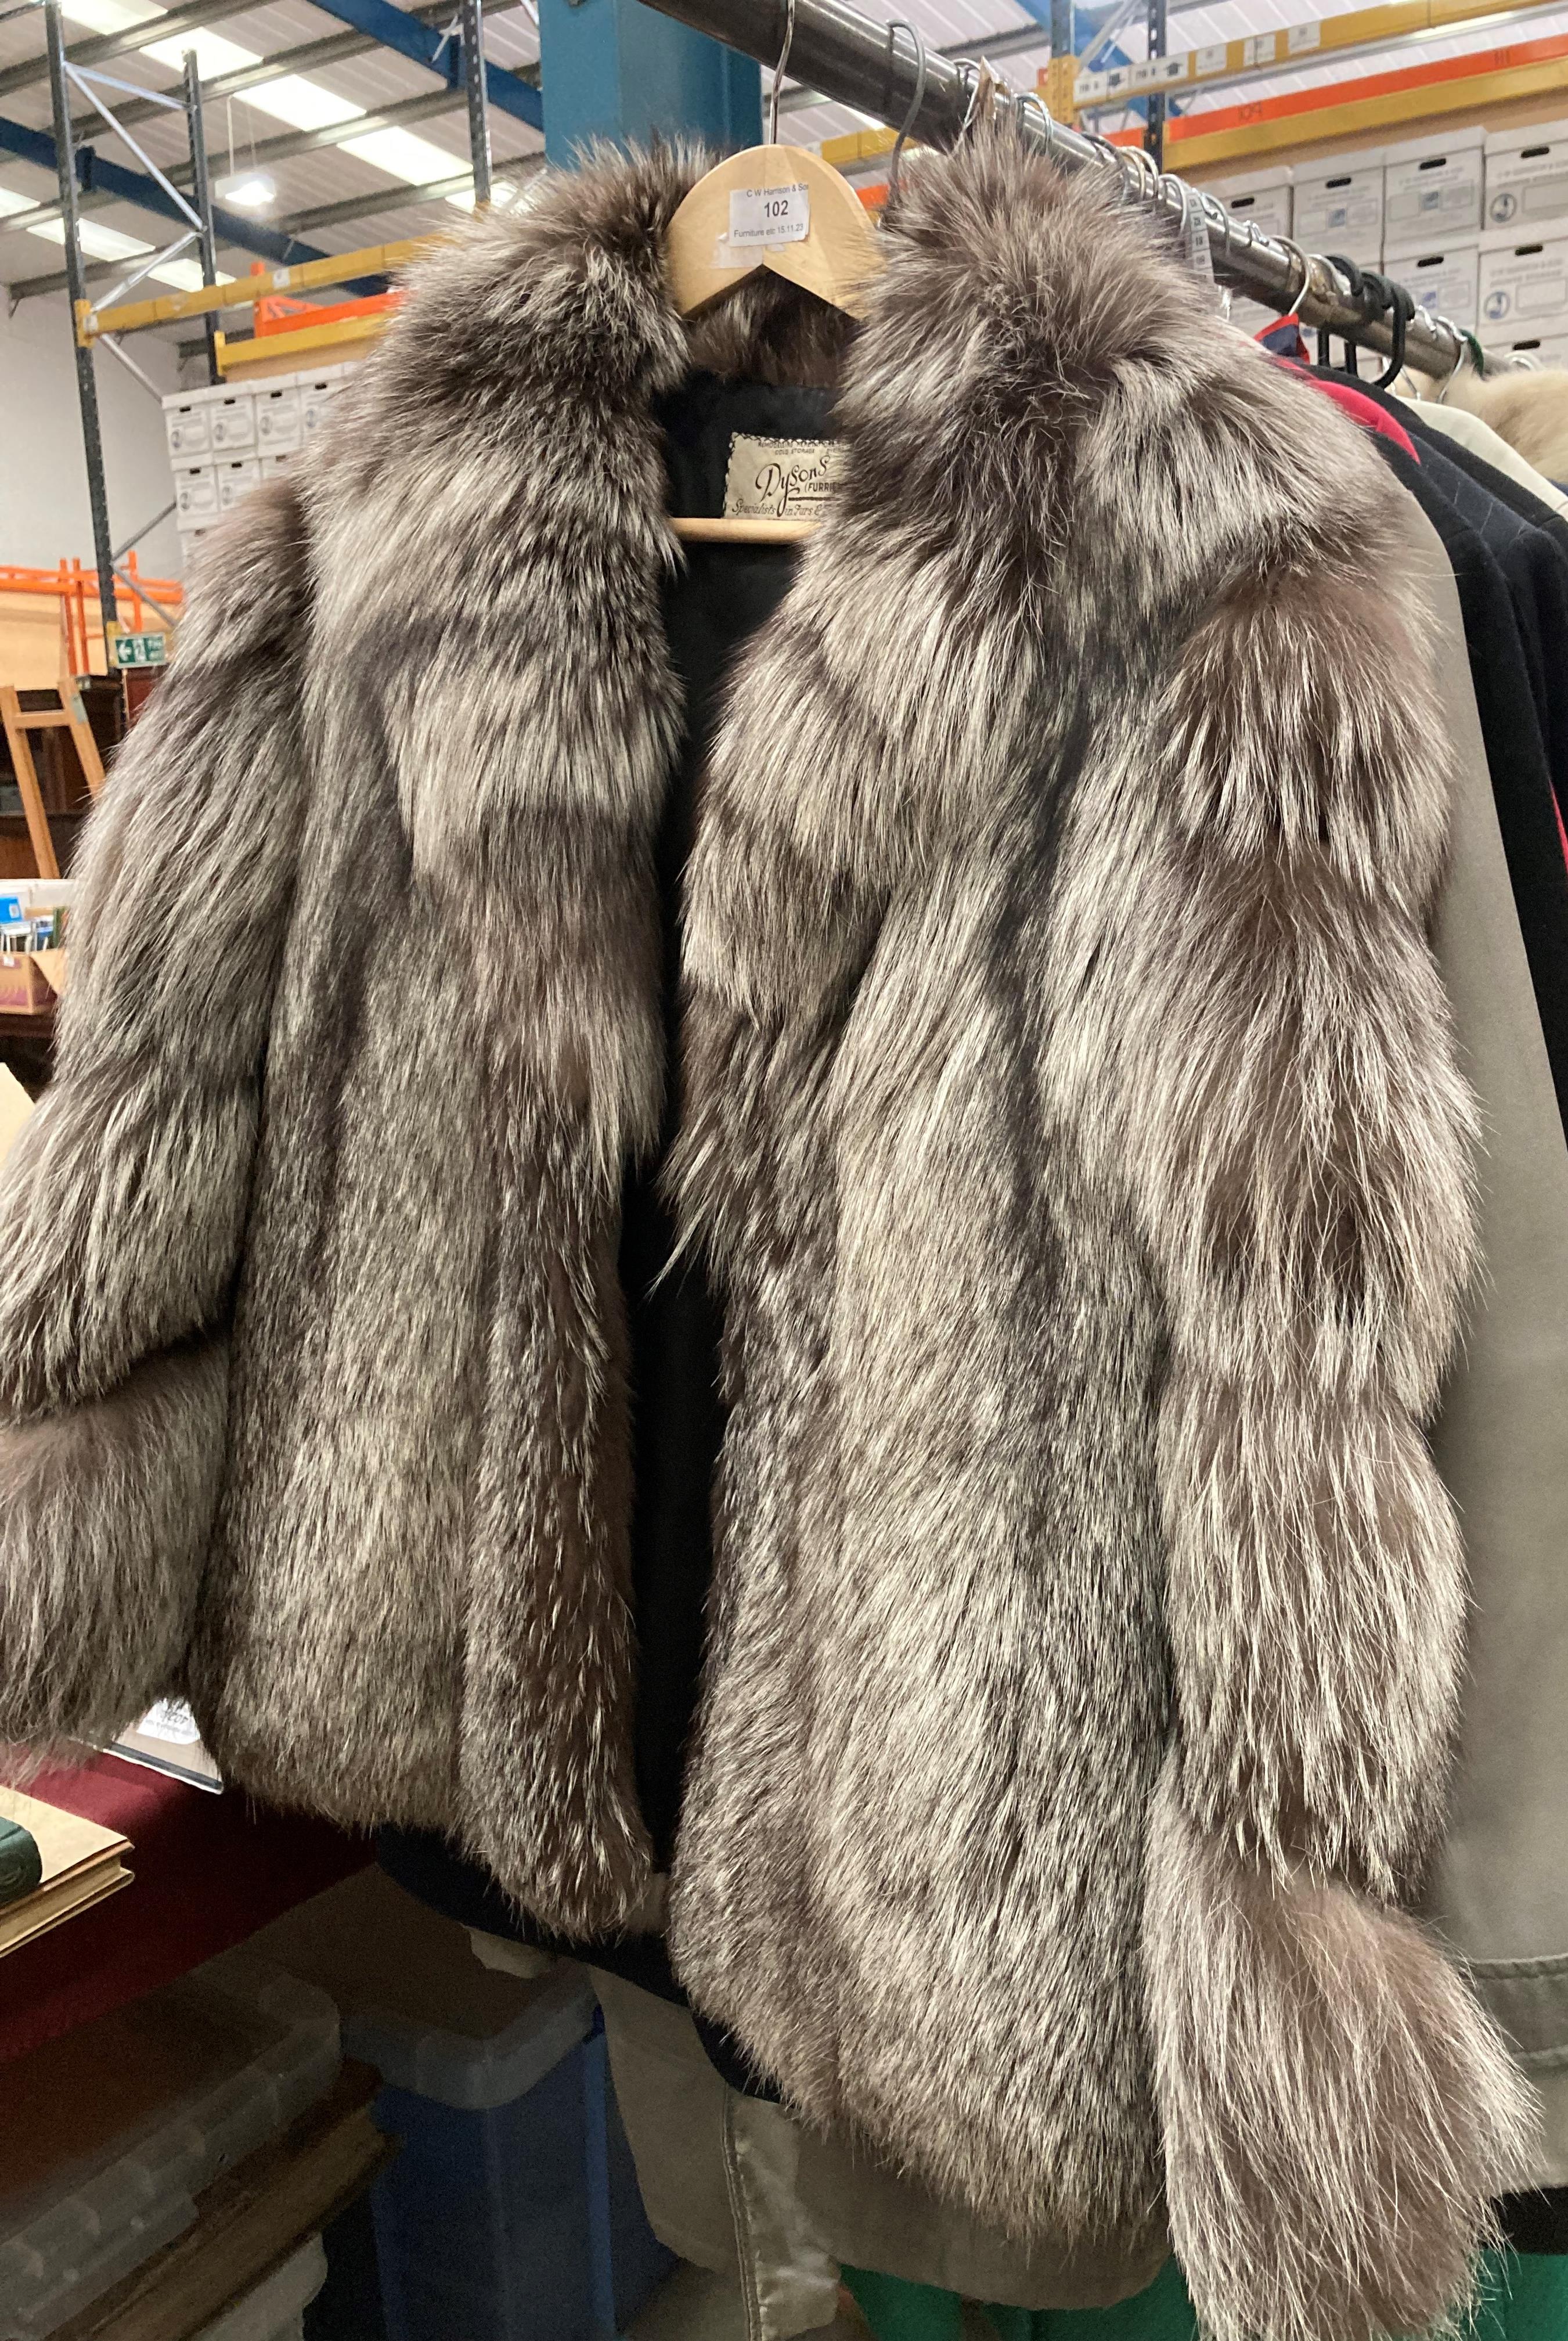 A Dysons Furiers Ltd Leeds London label short fur jacket (no size shown) (saleroom location: S3